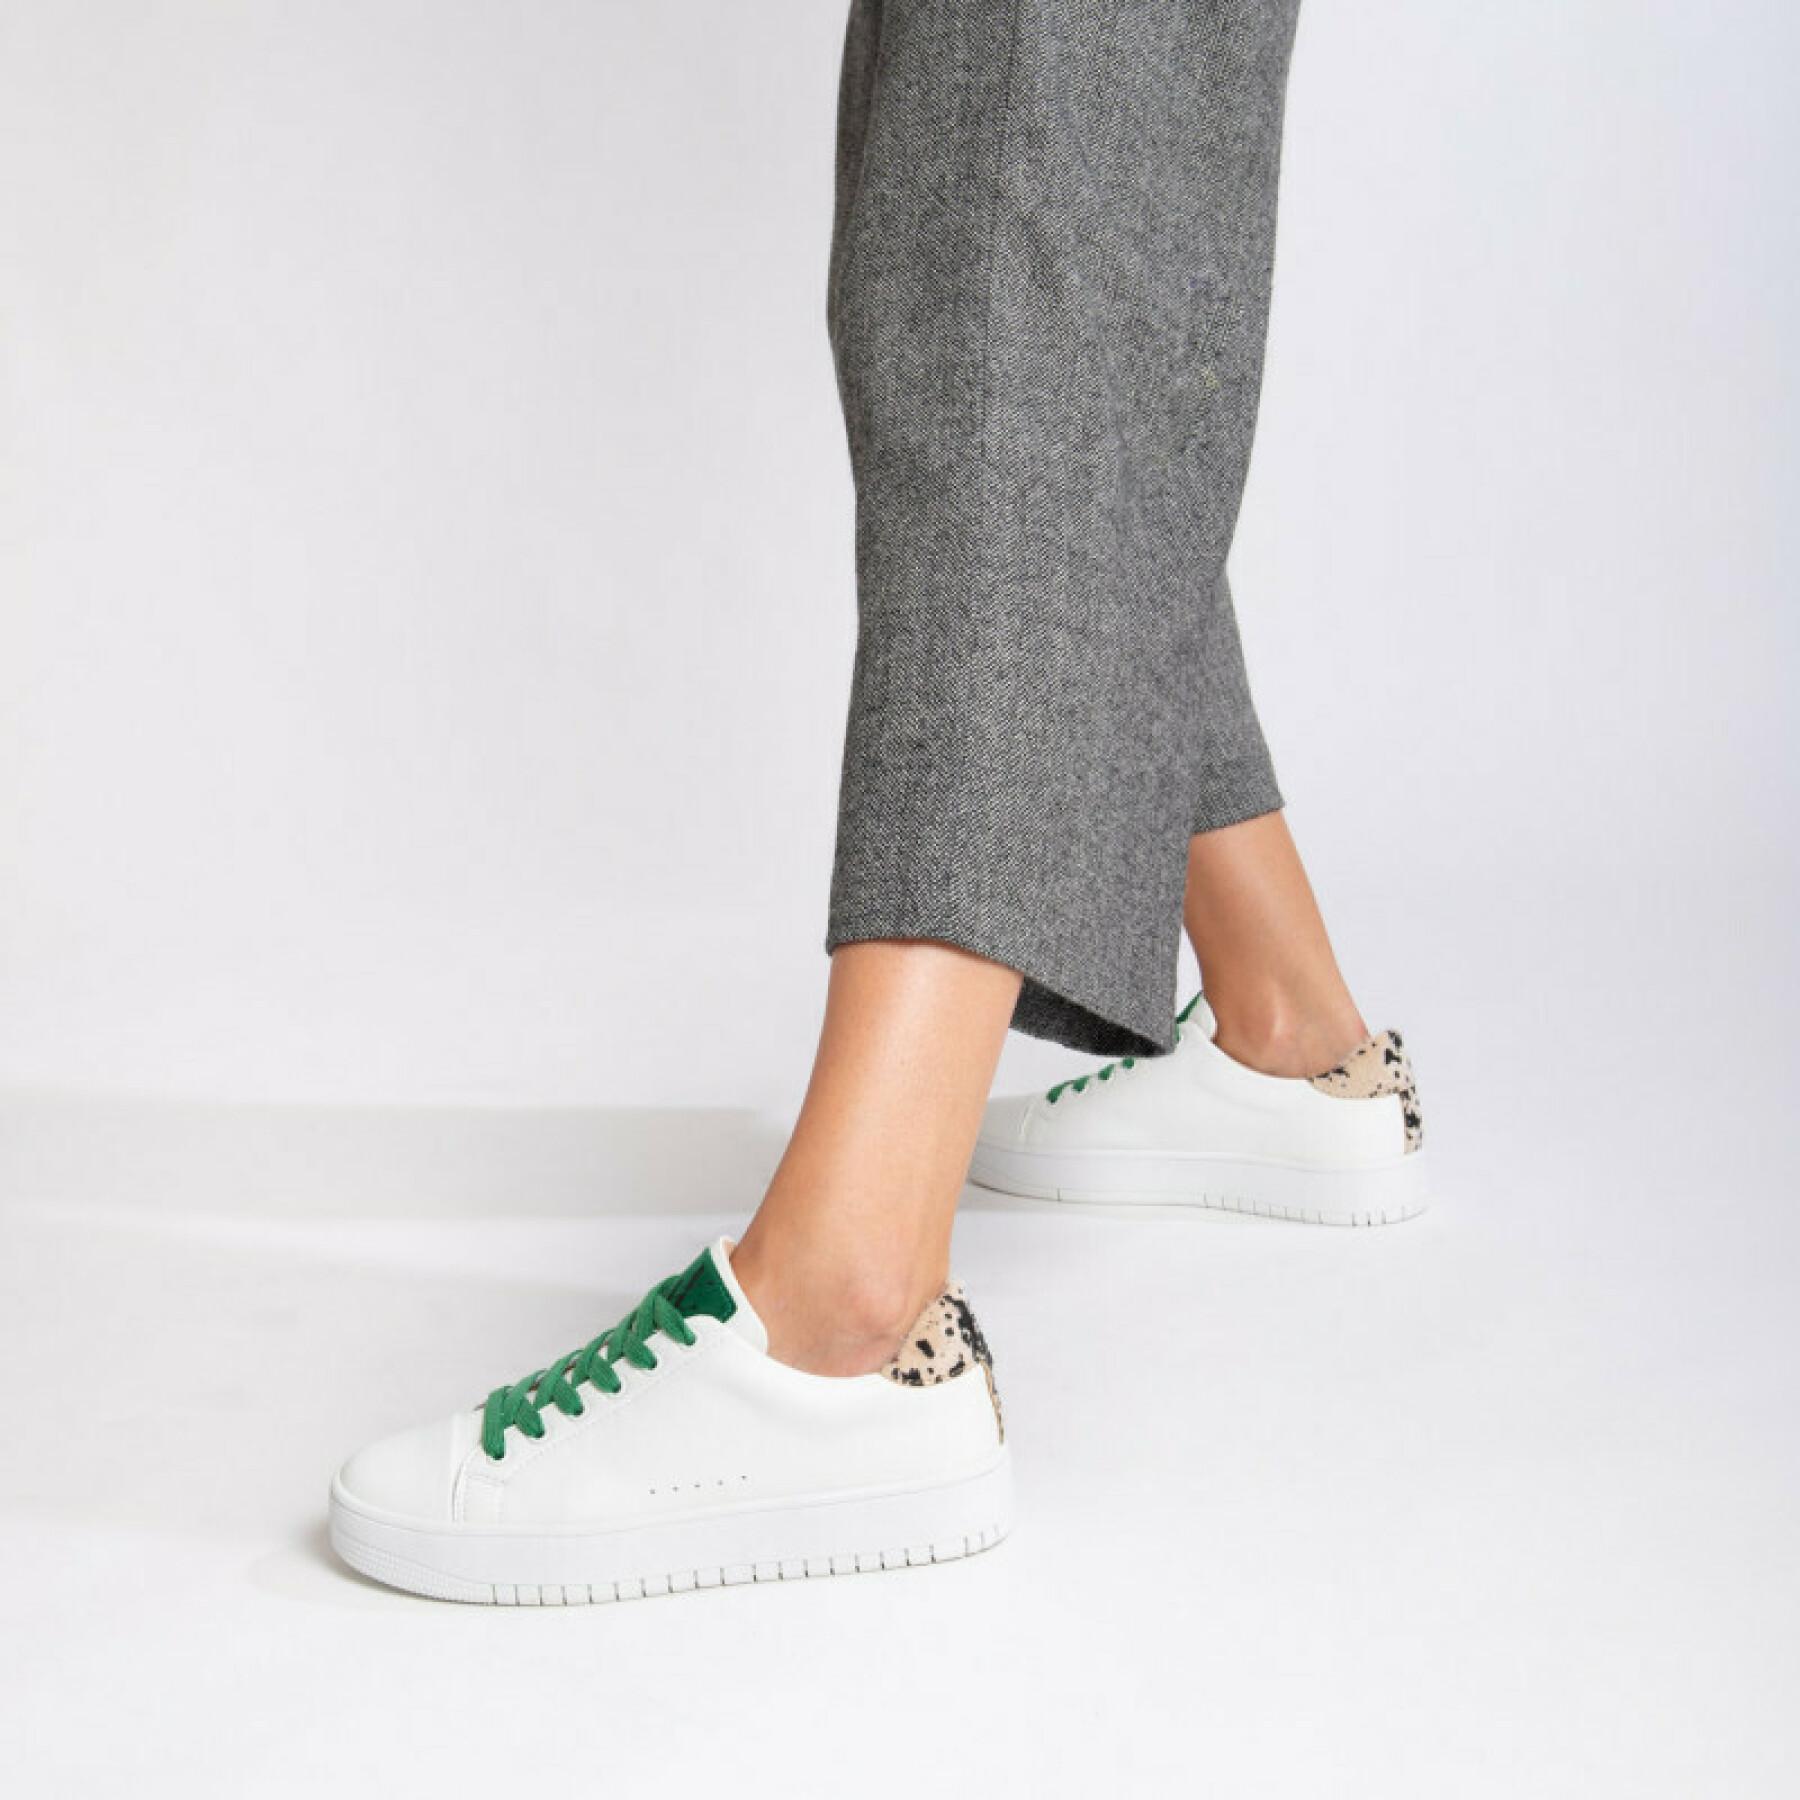 Zapatillas mujer Vanessa Wu blanco con cordones verdes